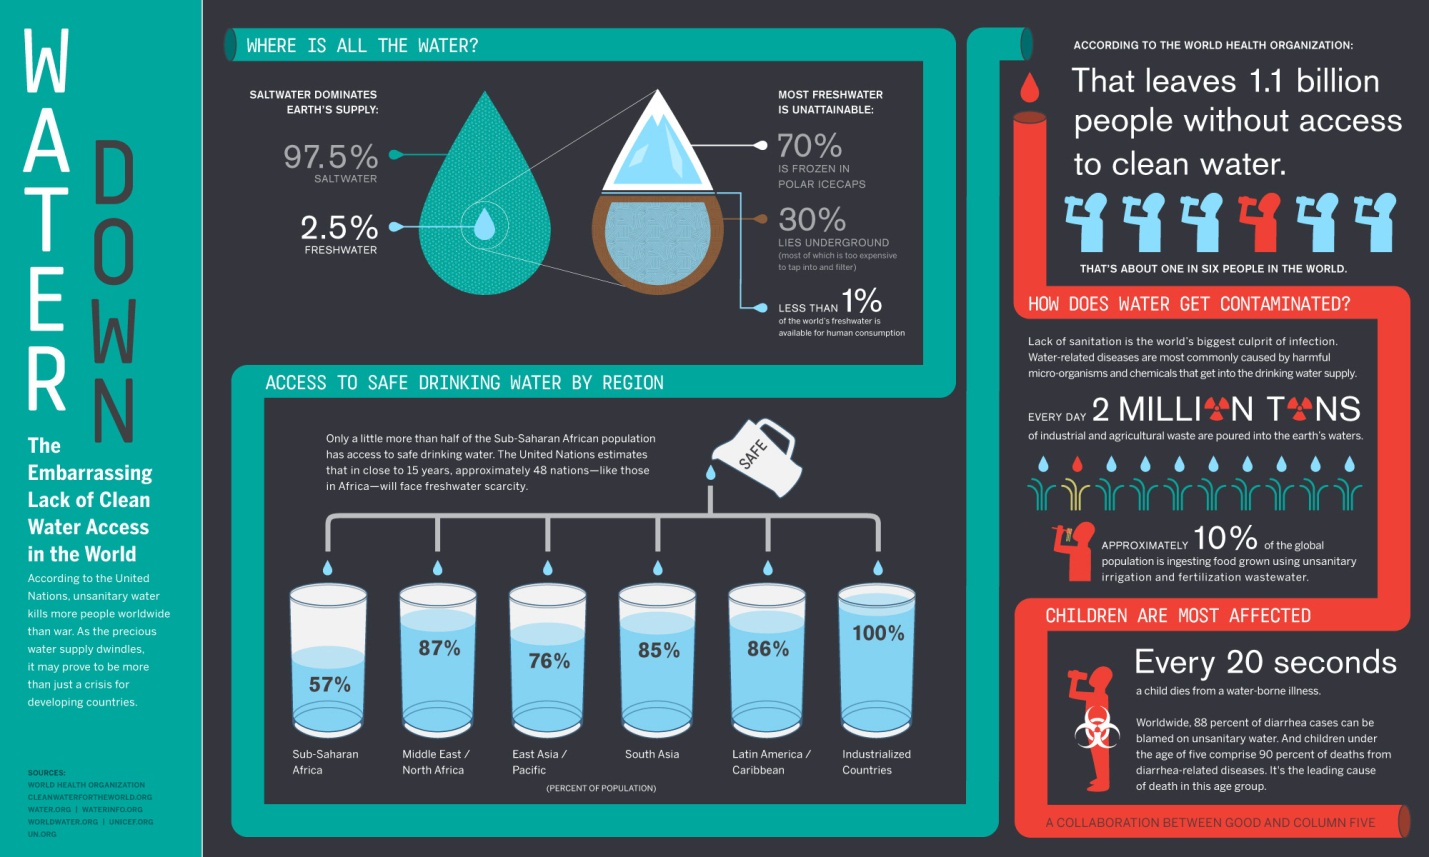 Deze afbeelding legt uit onze gezondheid daalt als ons drinkwater zeldzamer wordt.